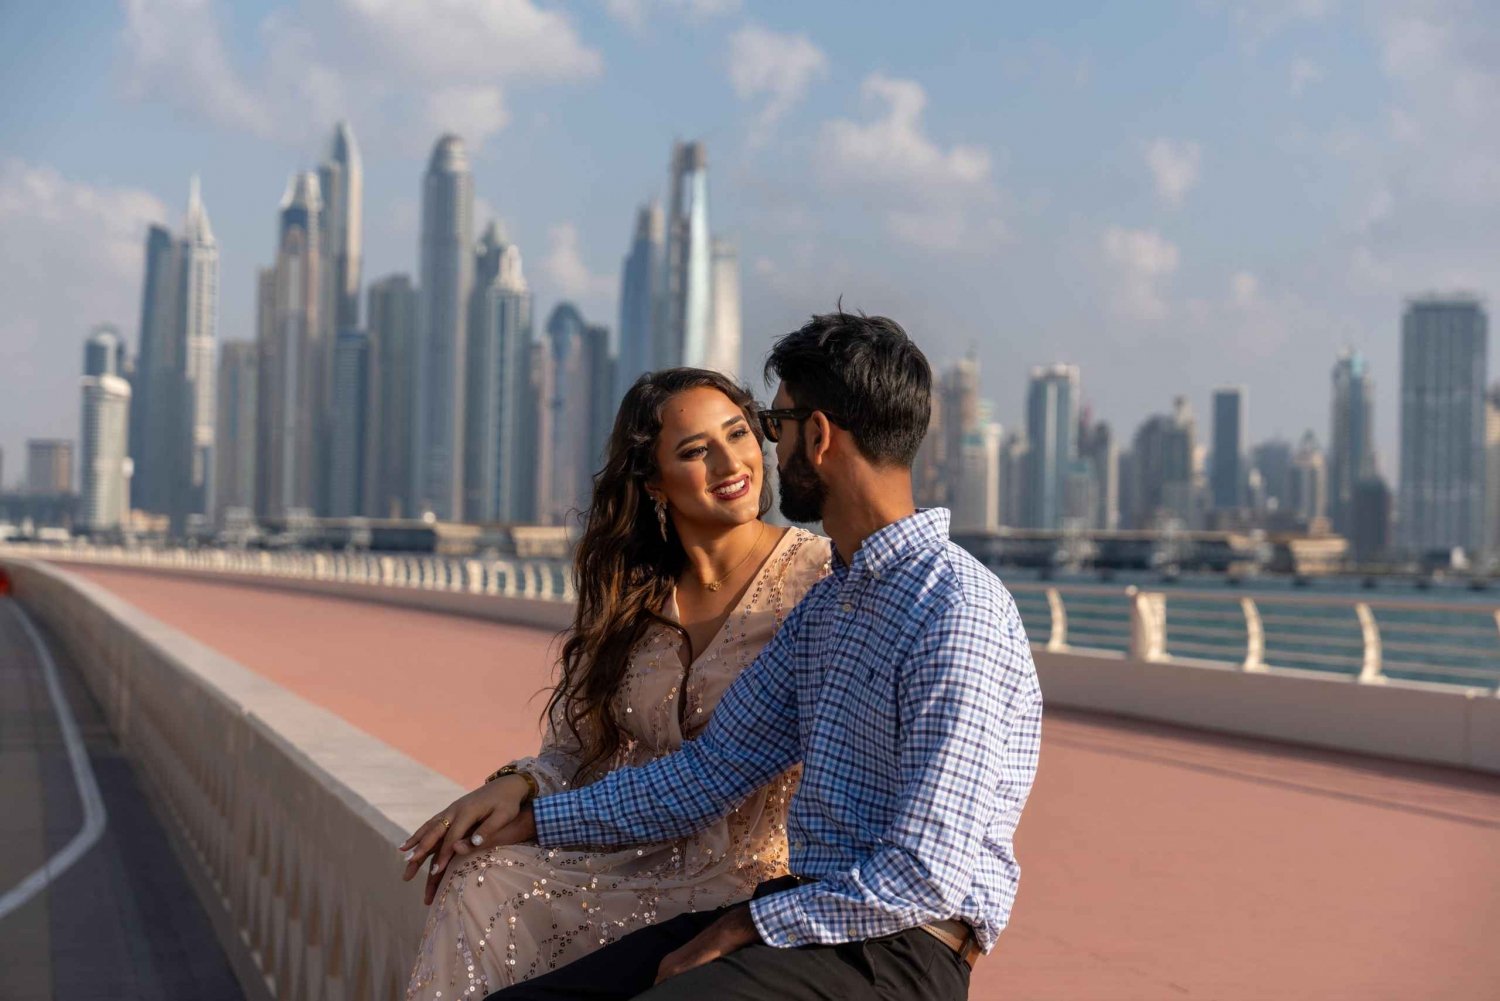 Dubaï : Séance photos privée avec prise en charge et retour à l'hôtel